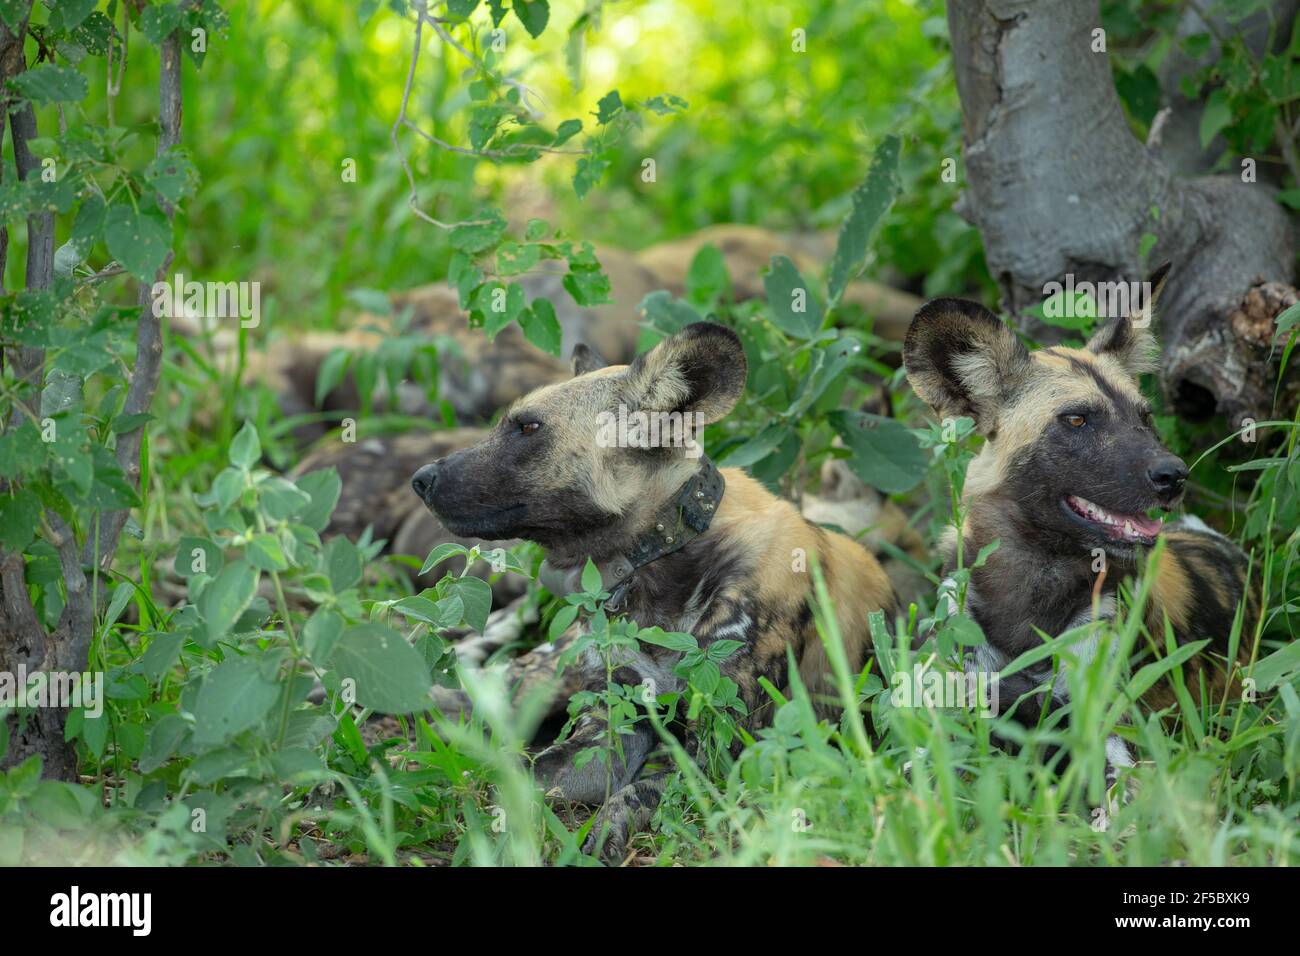 Cani da caccia selvatici africani o lupi dipinti (Lycaon pictus). Adulto maschio sulla destra. Donna adulta indossata ricercatori collare trasmittente radio, sinistra.. T Foto Stock